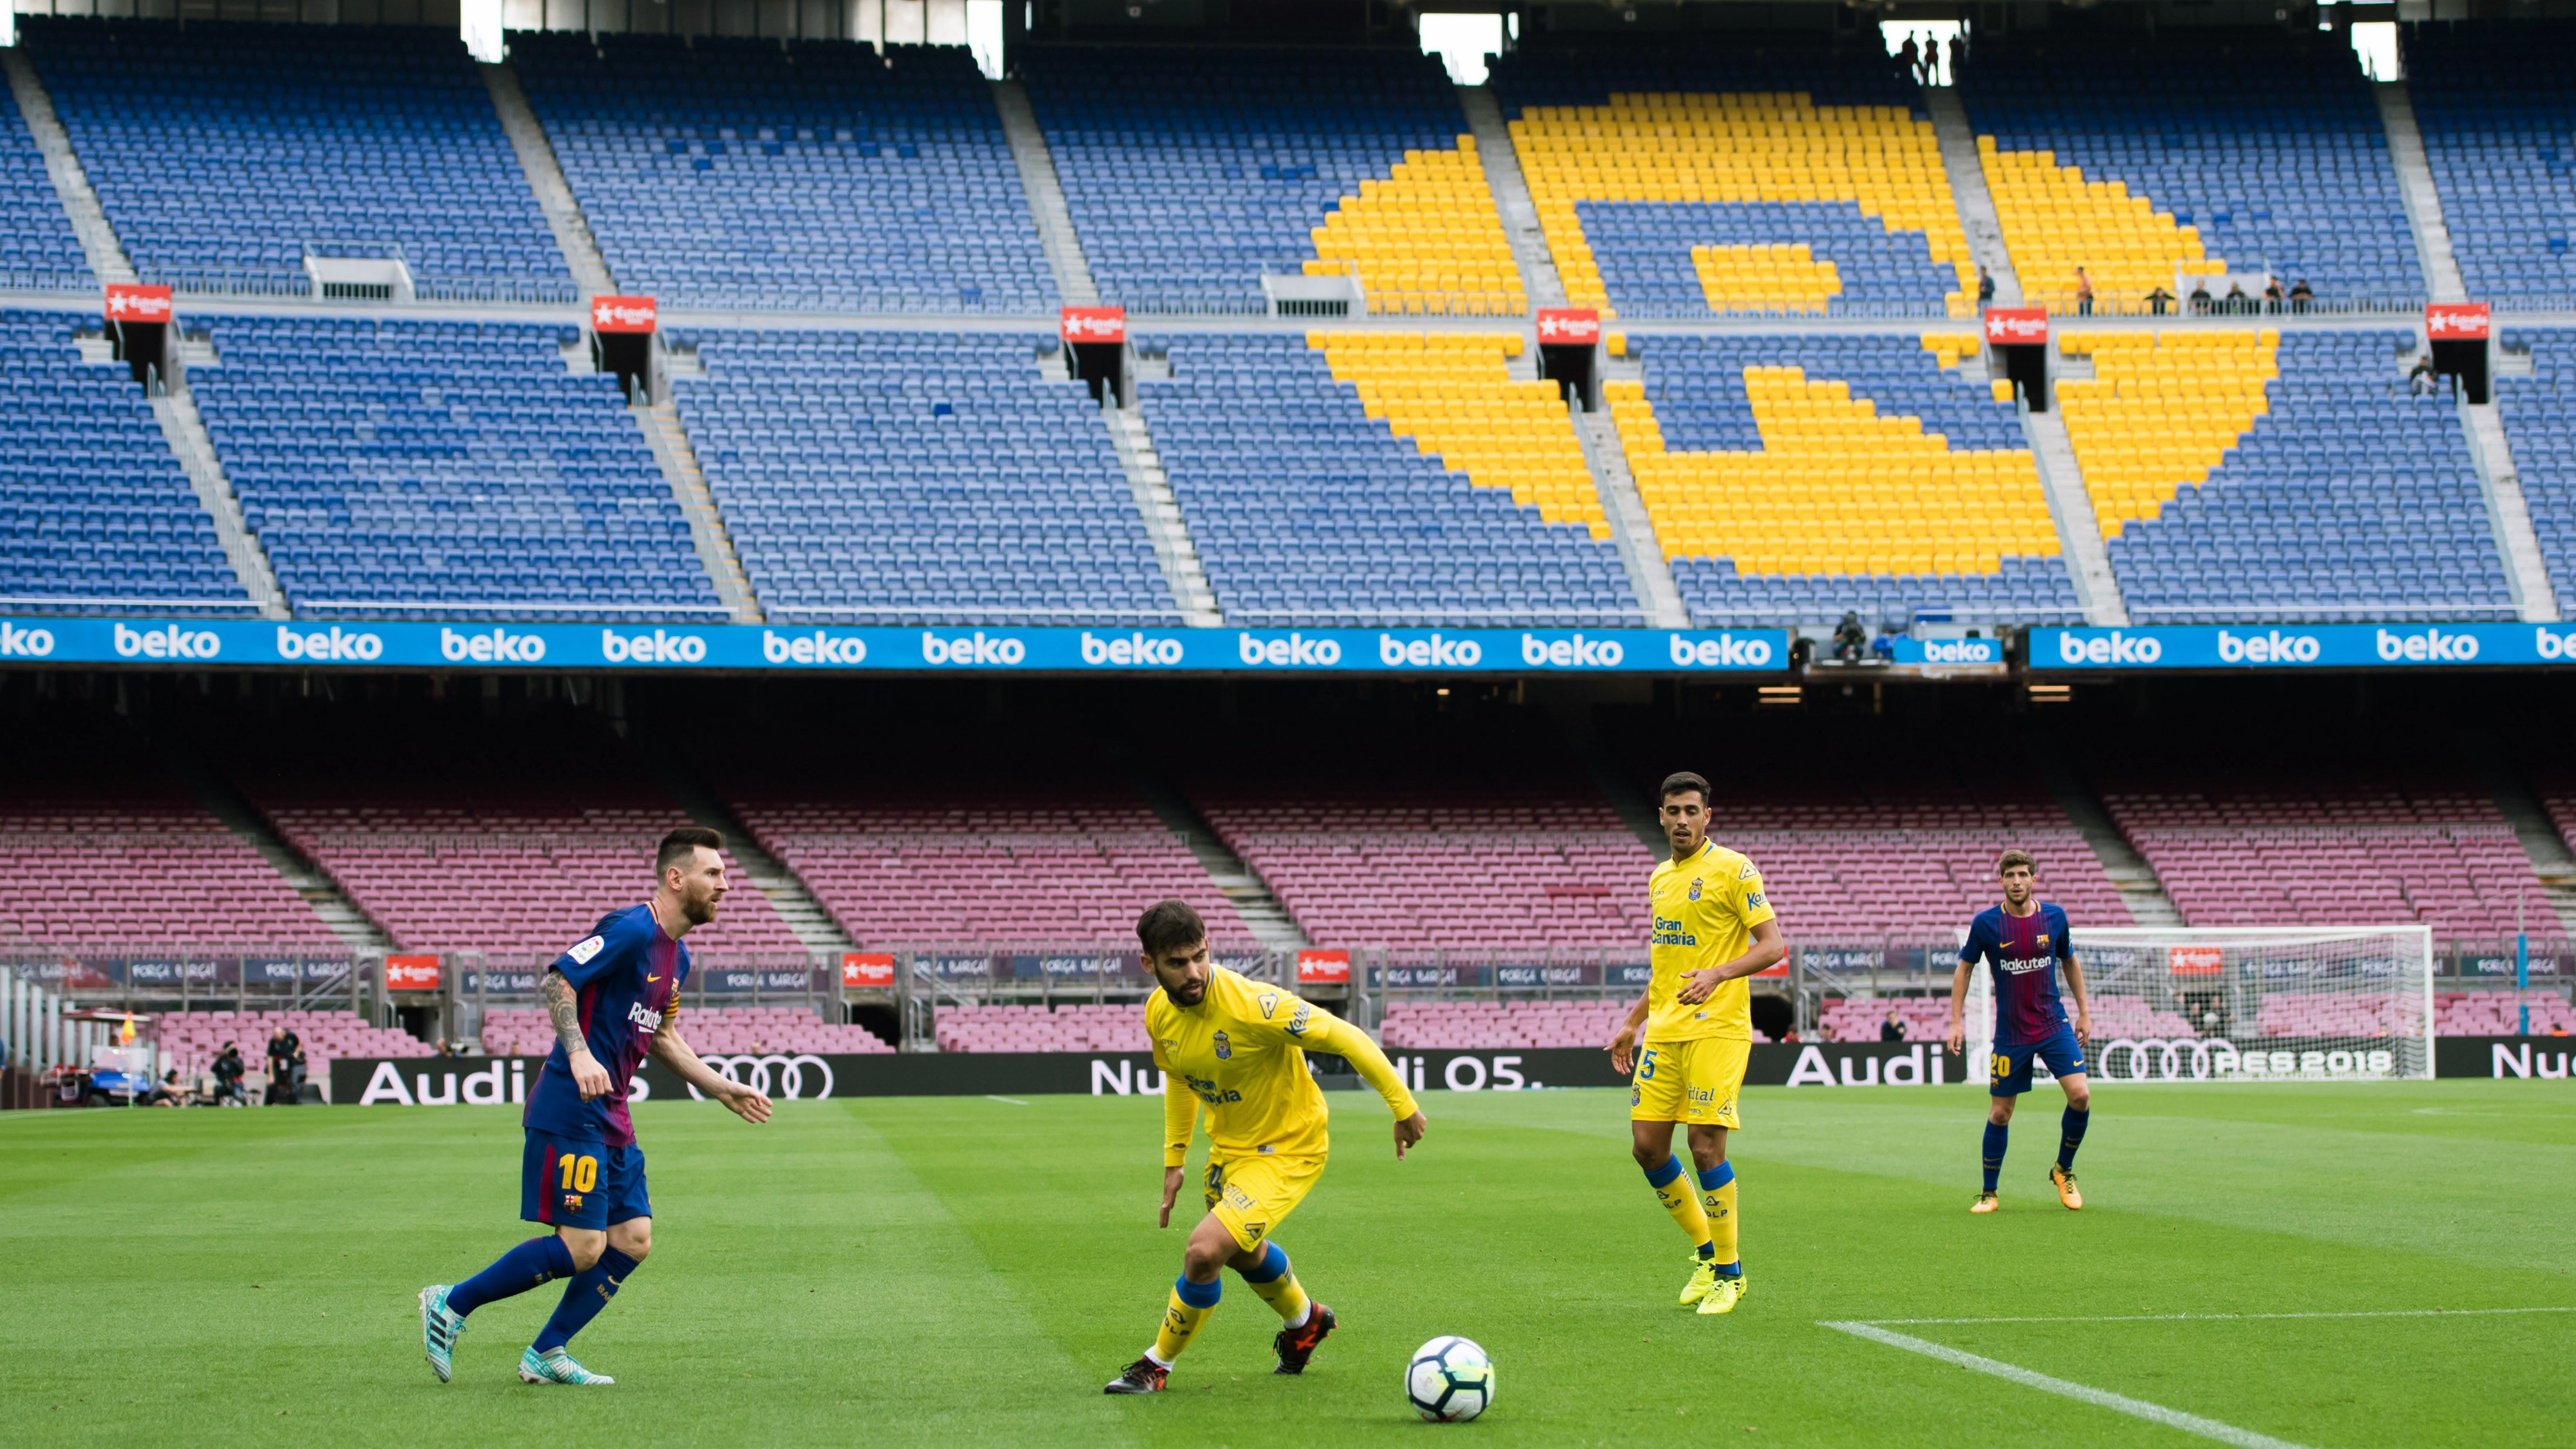 Nội bộ Barcelona chìm trong khủng hoảng sau trận cầu không khán giả - Bóng Đá